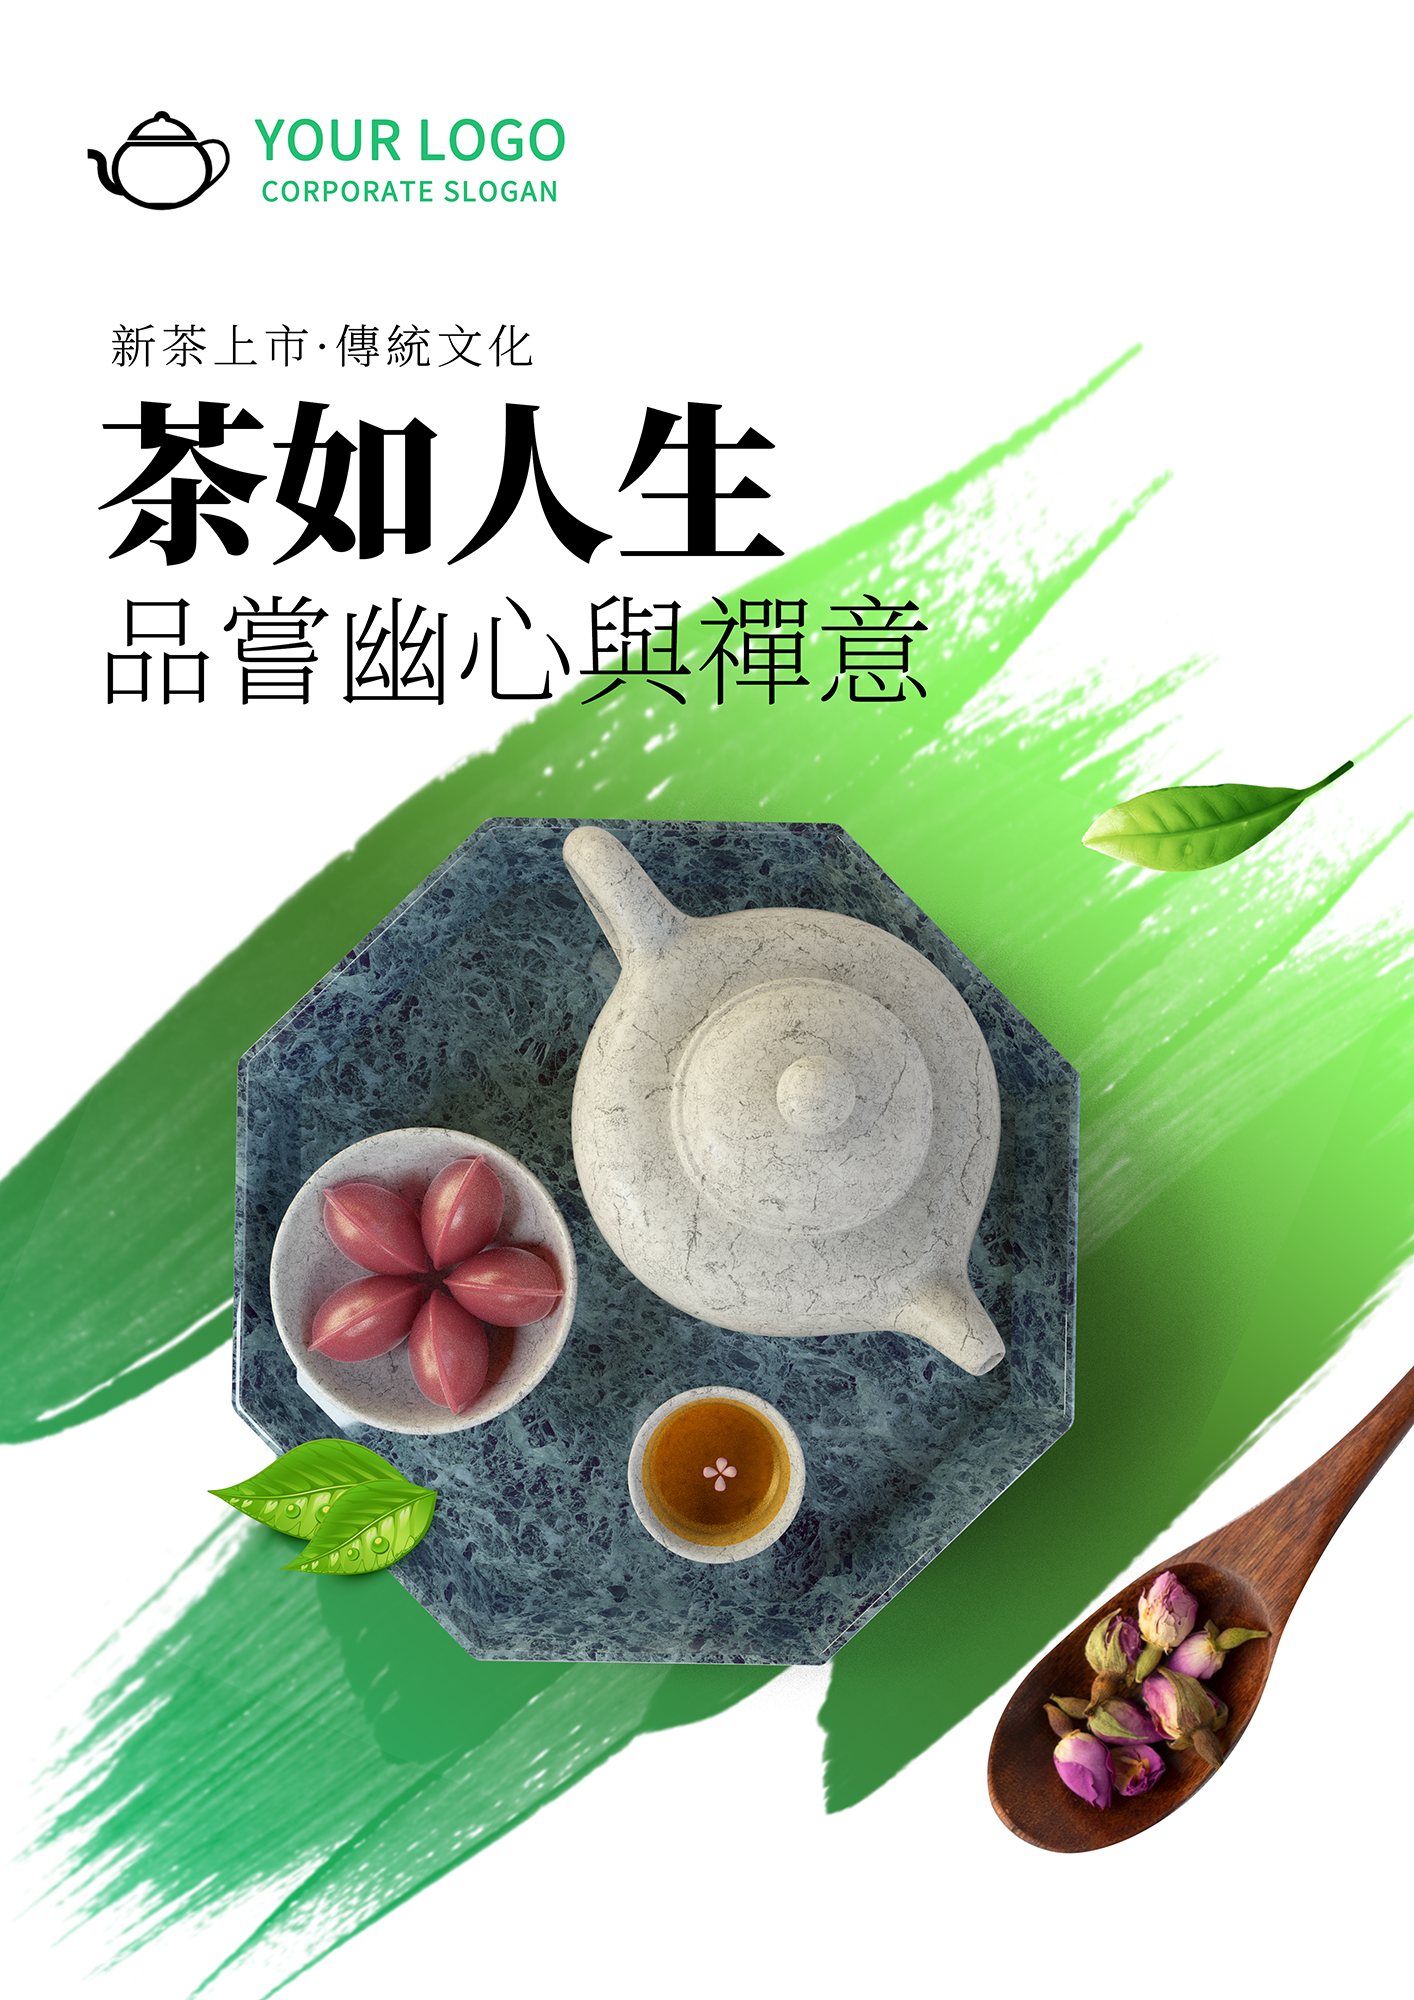 笔刷涂抹茶壶茶杯茶道传统文化宣传海报图片